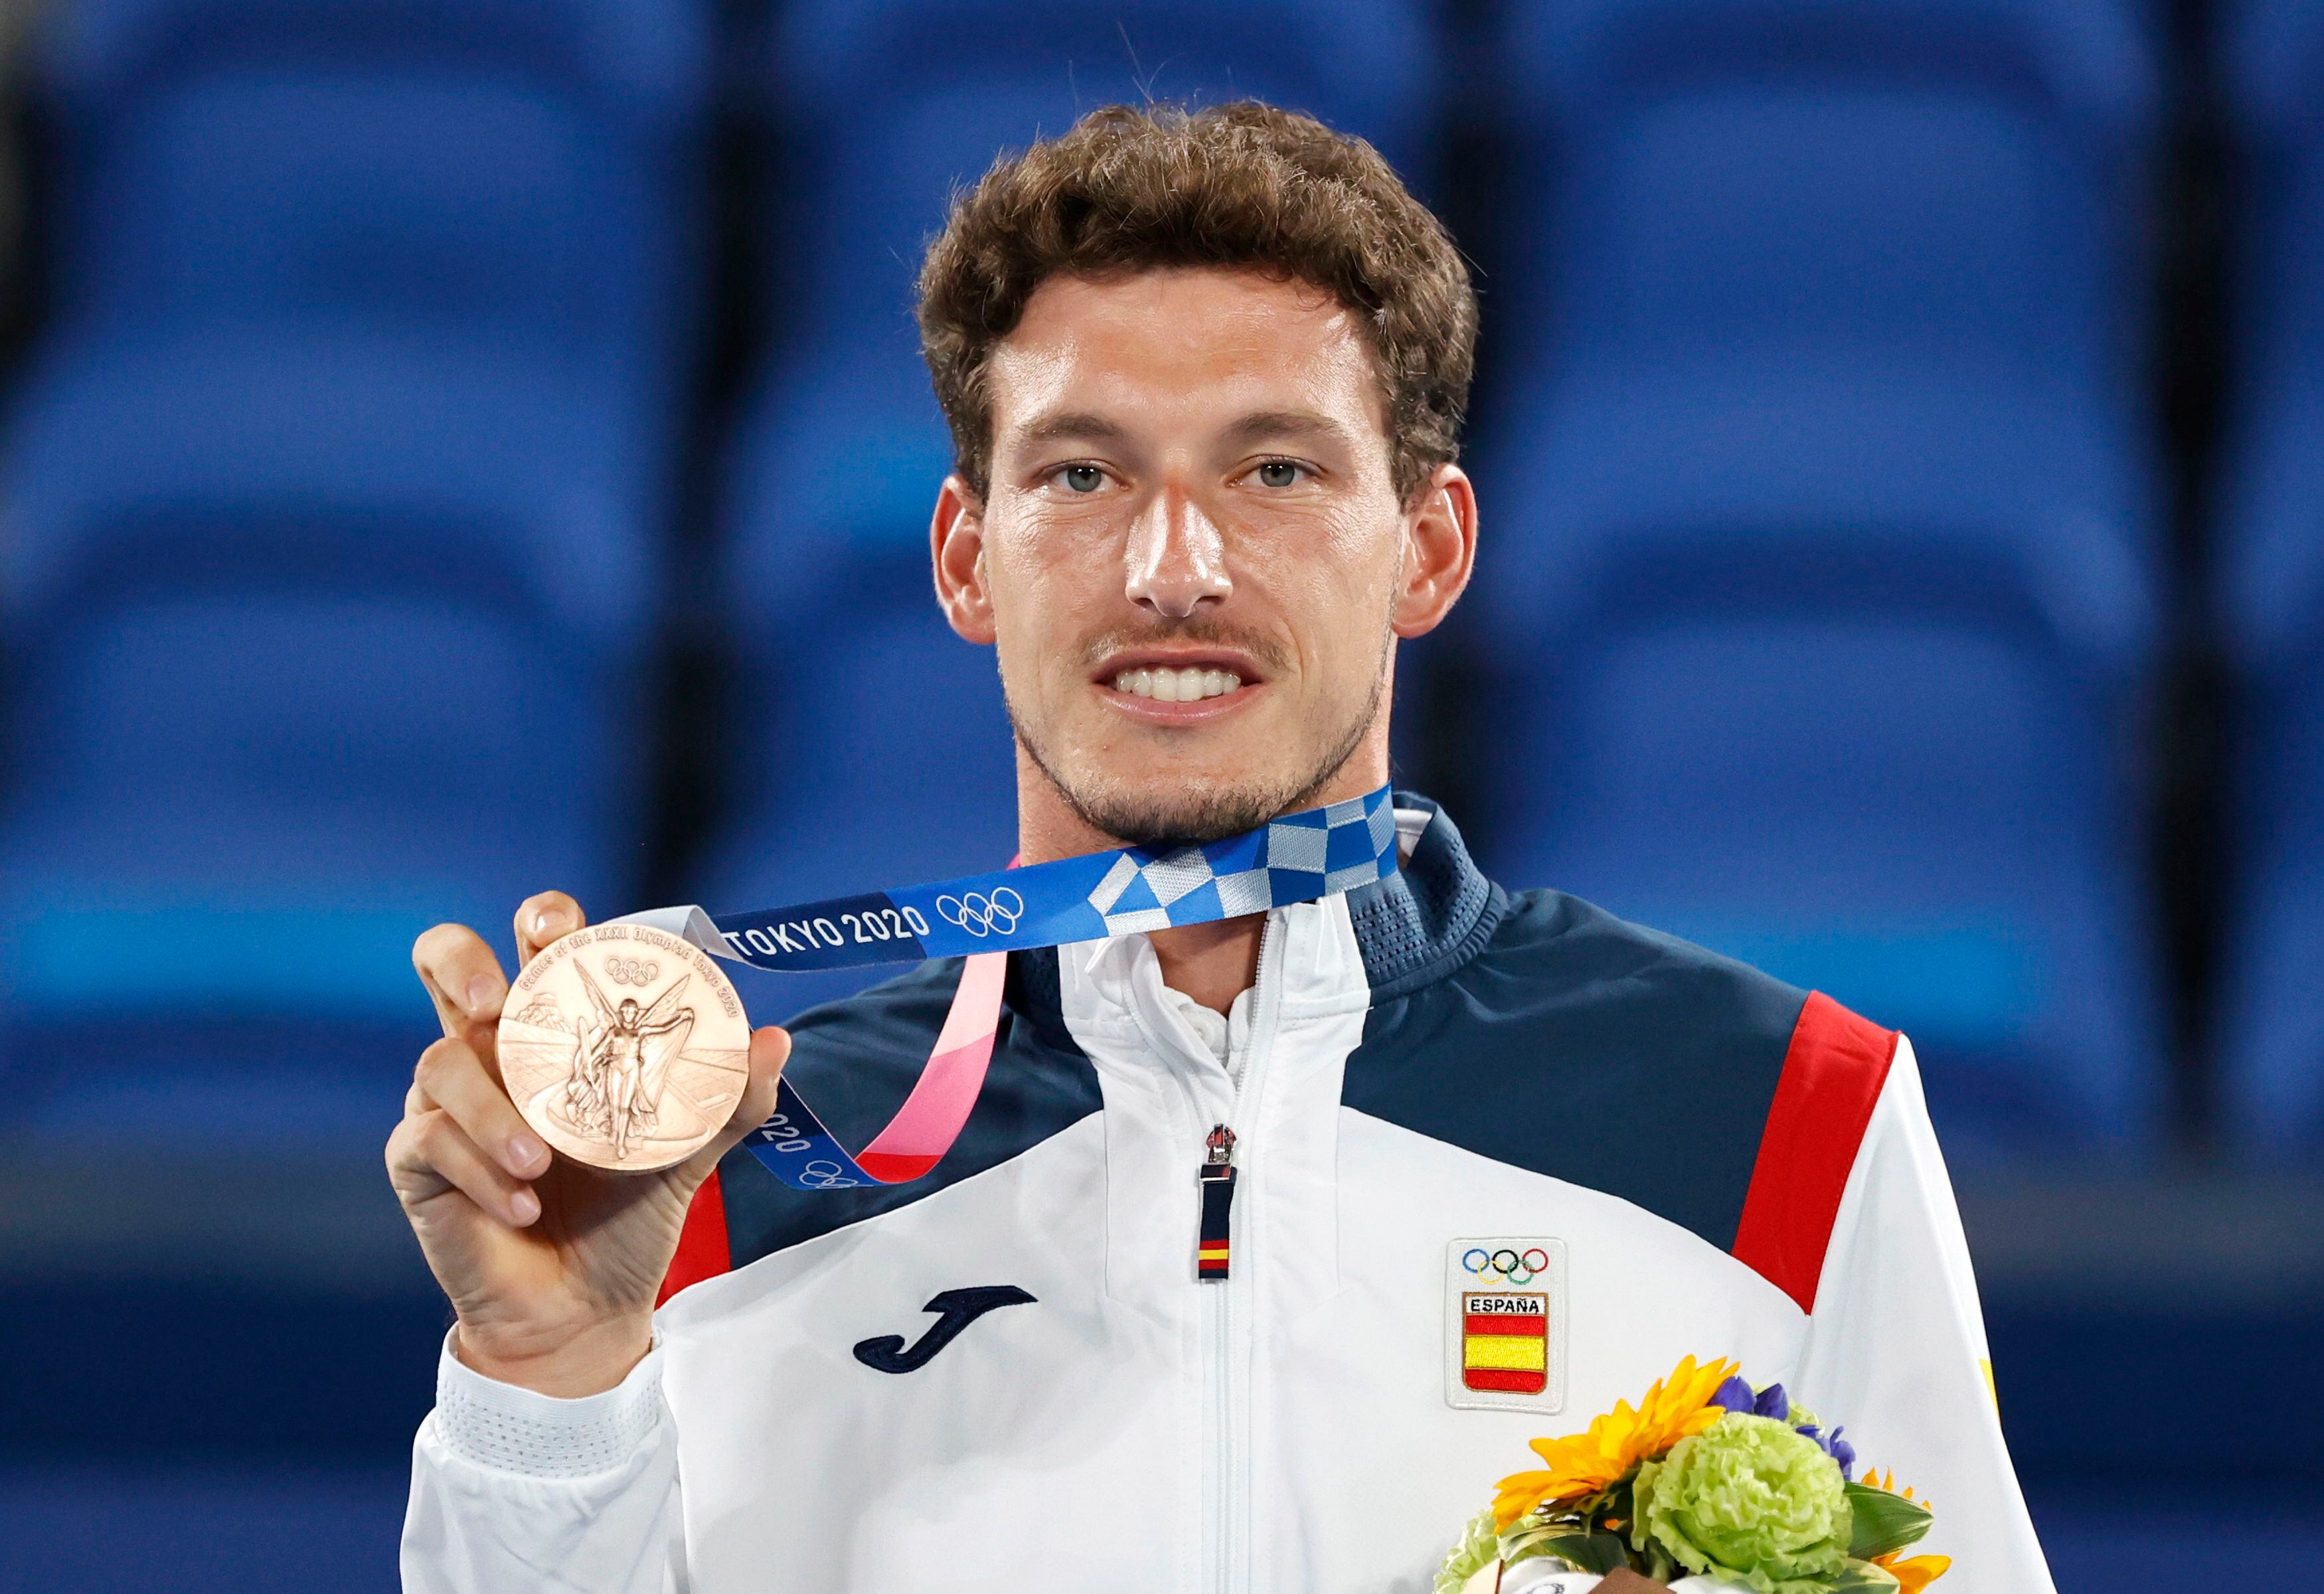 El tenista español Pablo Carreño celebra en el podio tras conseguir su medalla de bronce en los Juegos Olímpicos de Tokio